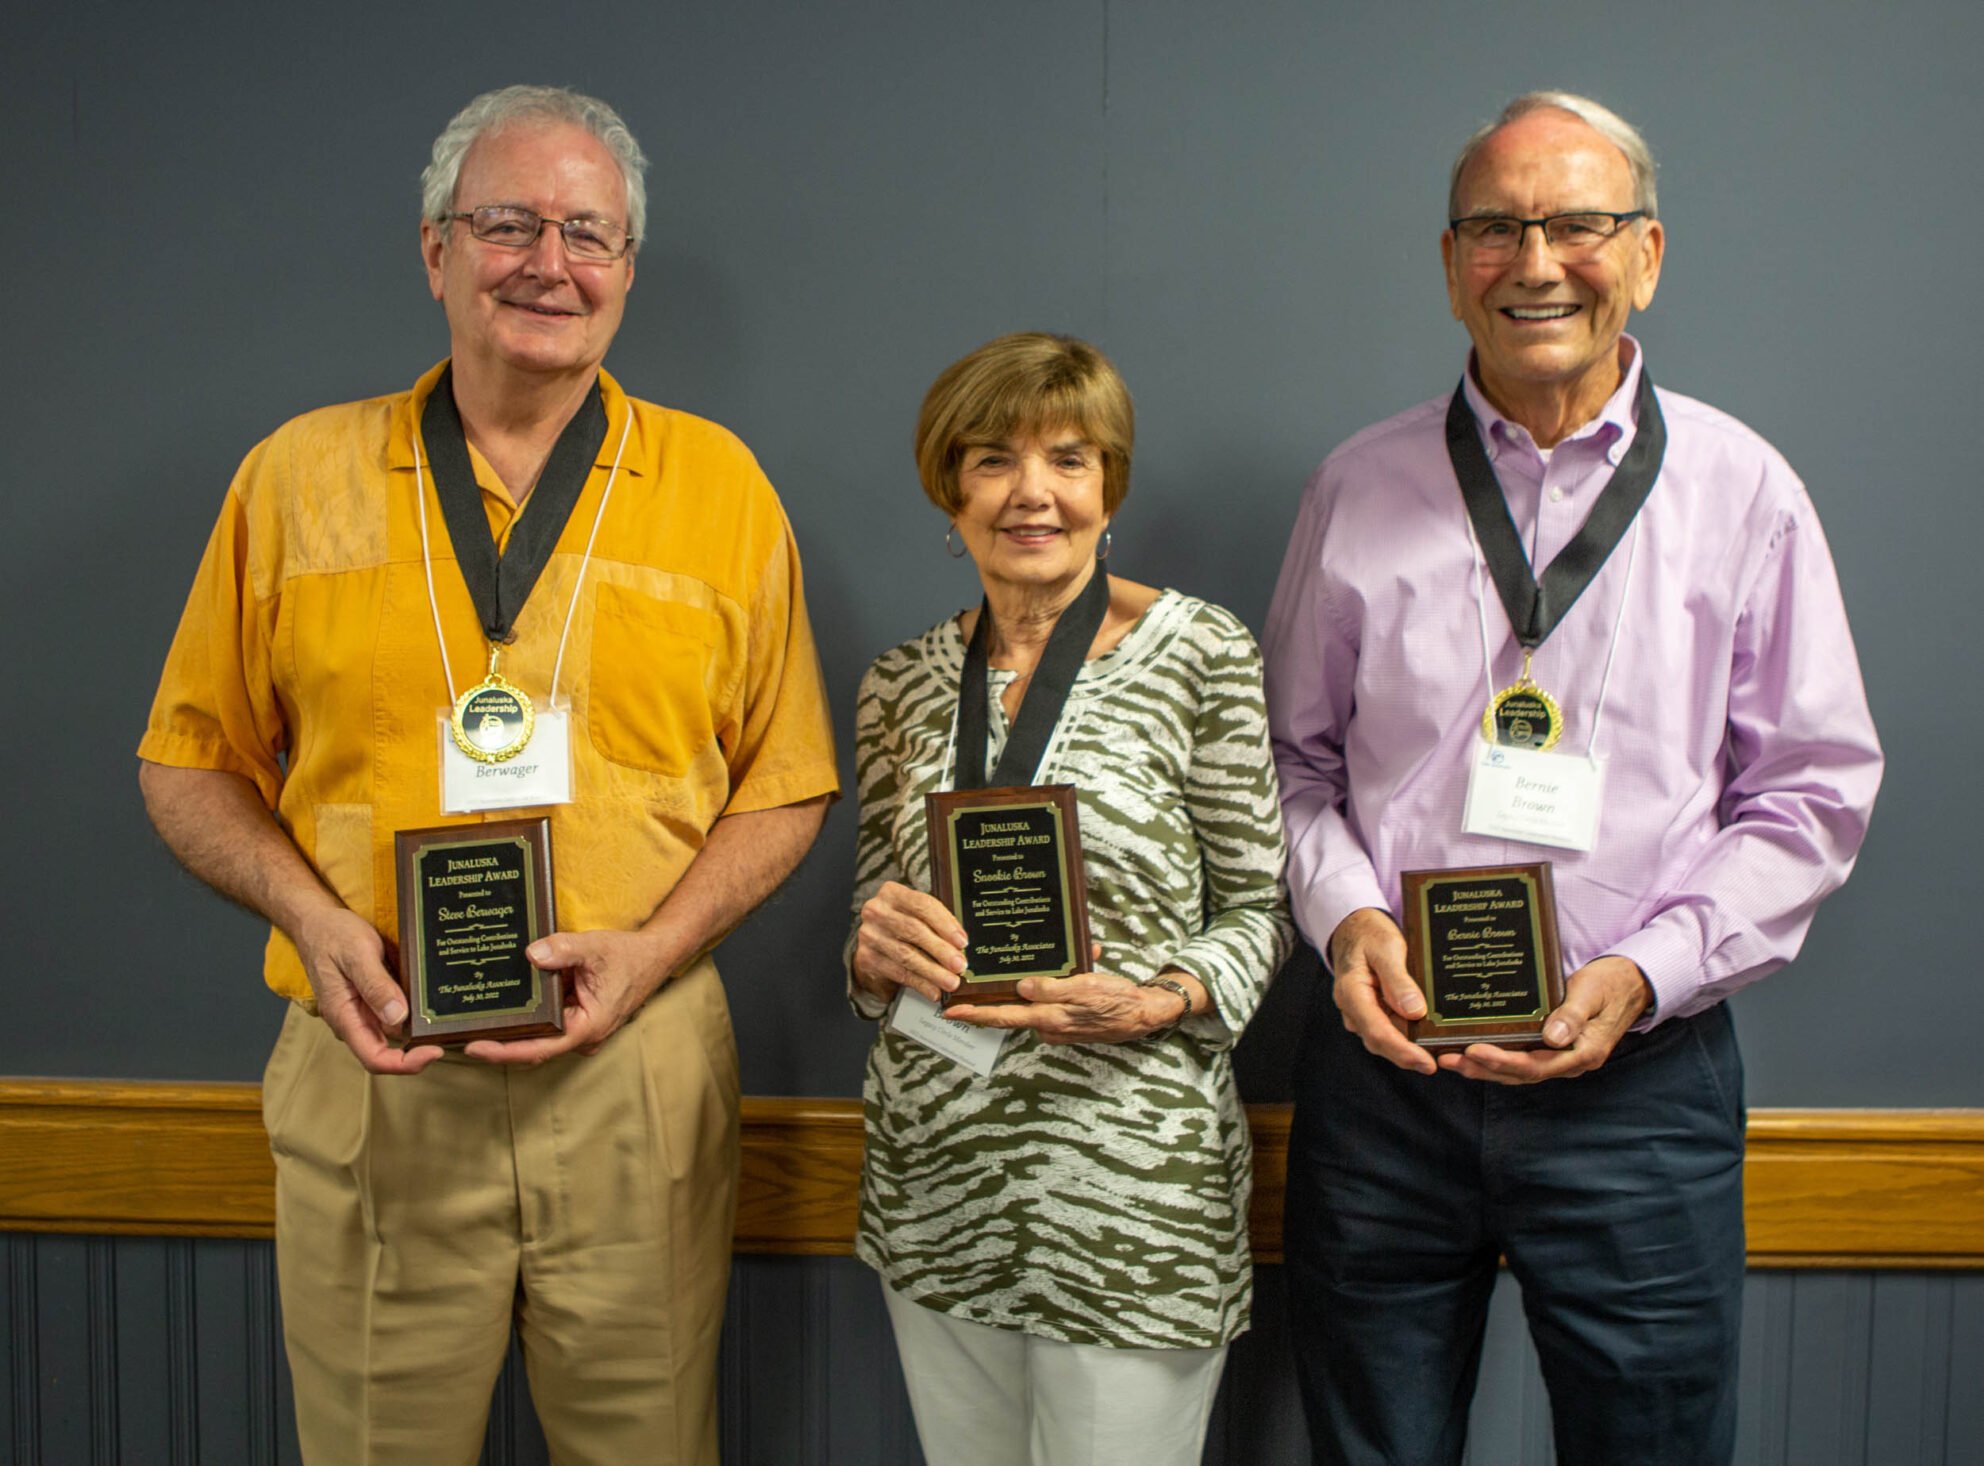 Steve Berwager and Snookie and Bernie Brown honored with 2022 Junaluska Leadership Award